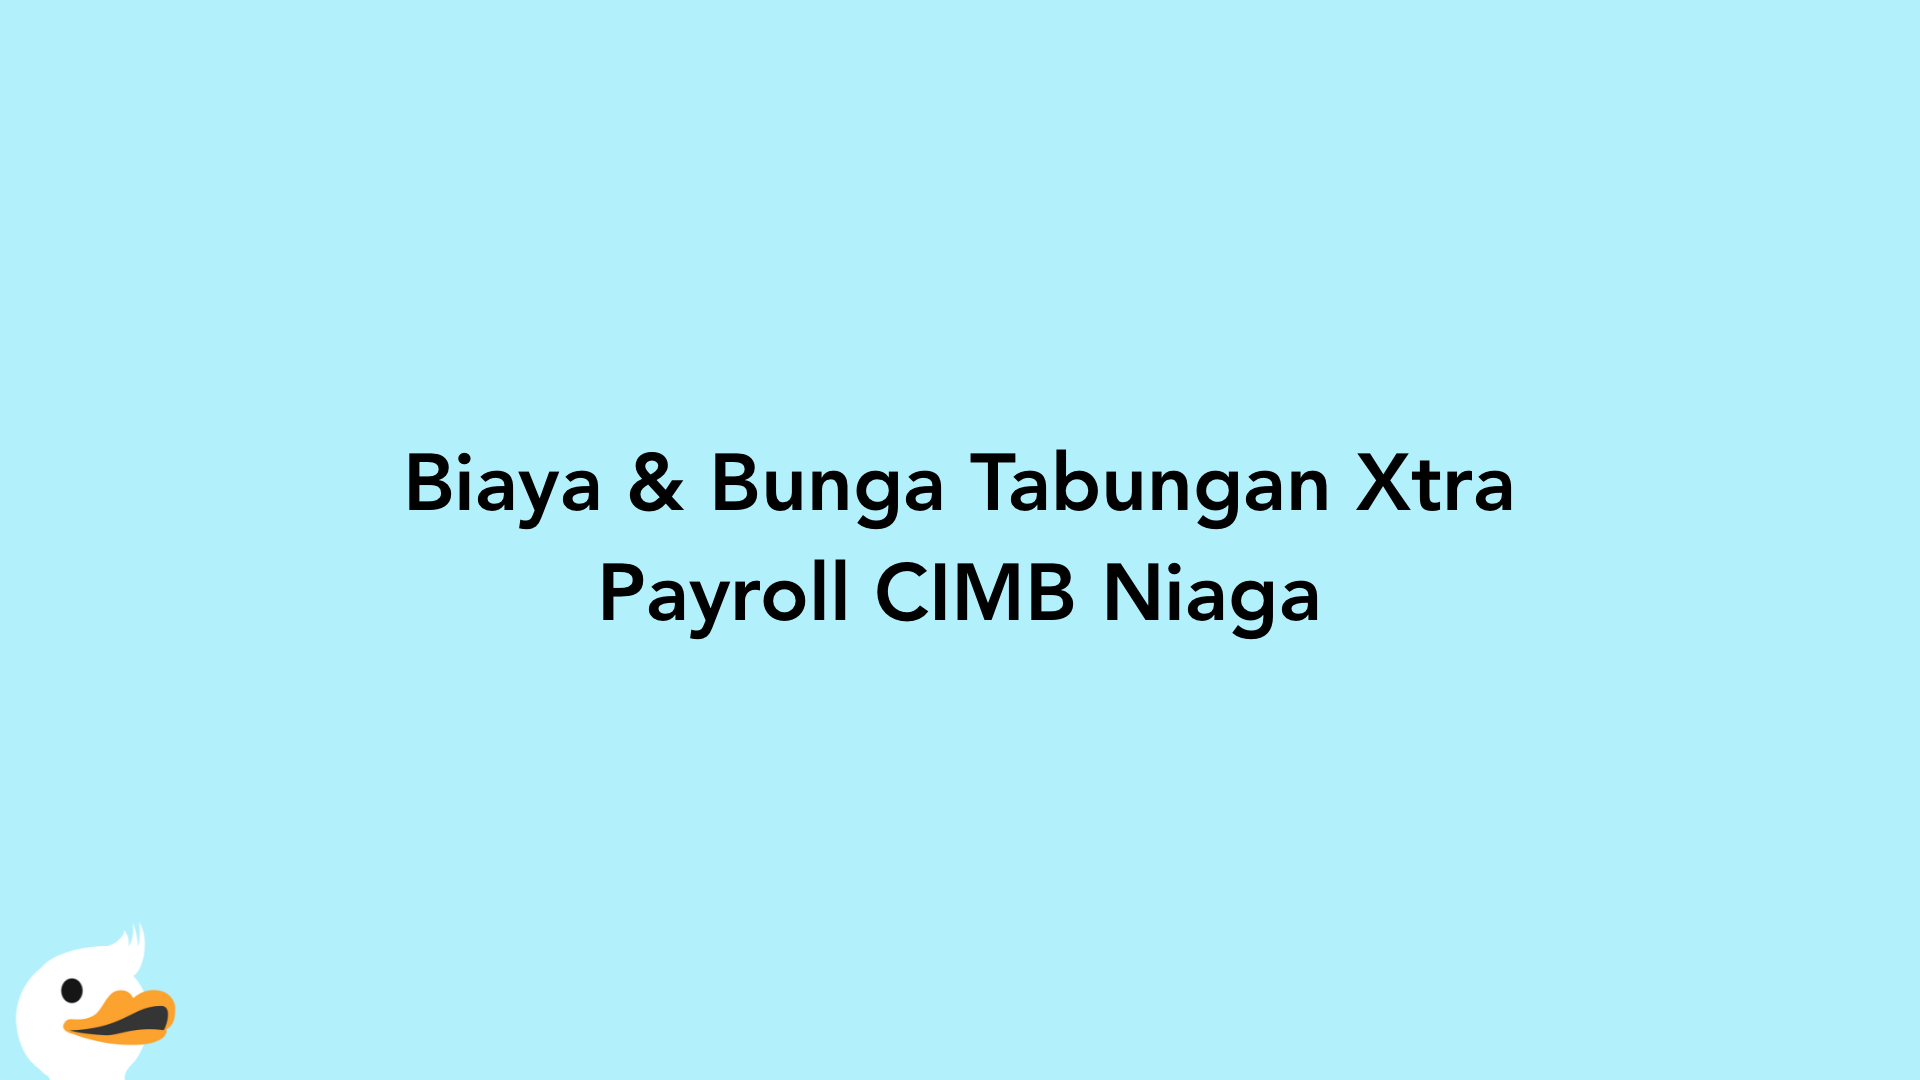 Biaya & Bunga Tabungan Xtra Payroll CIMB Niaga